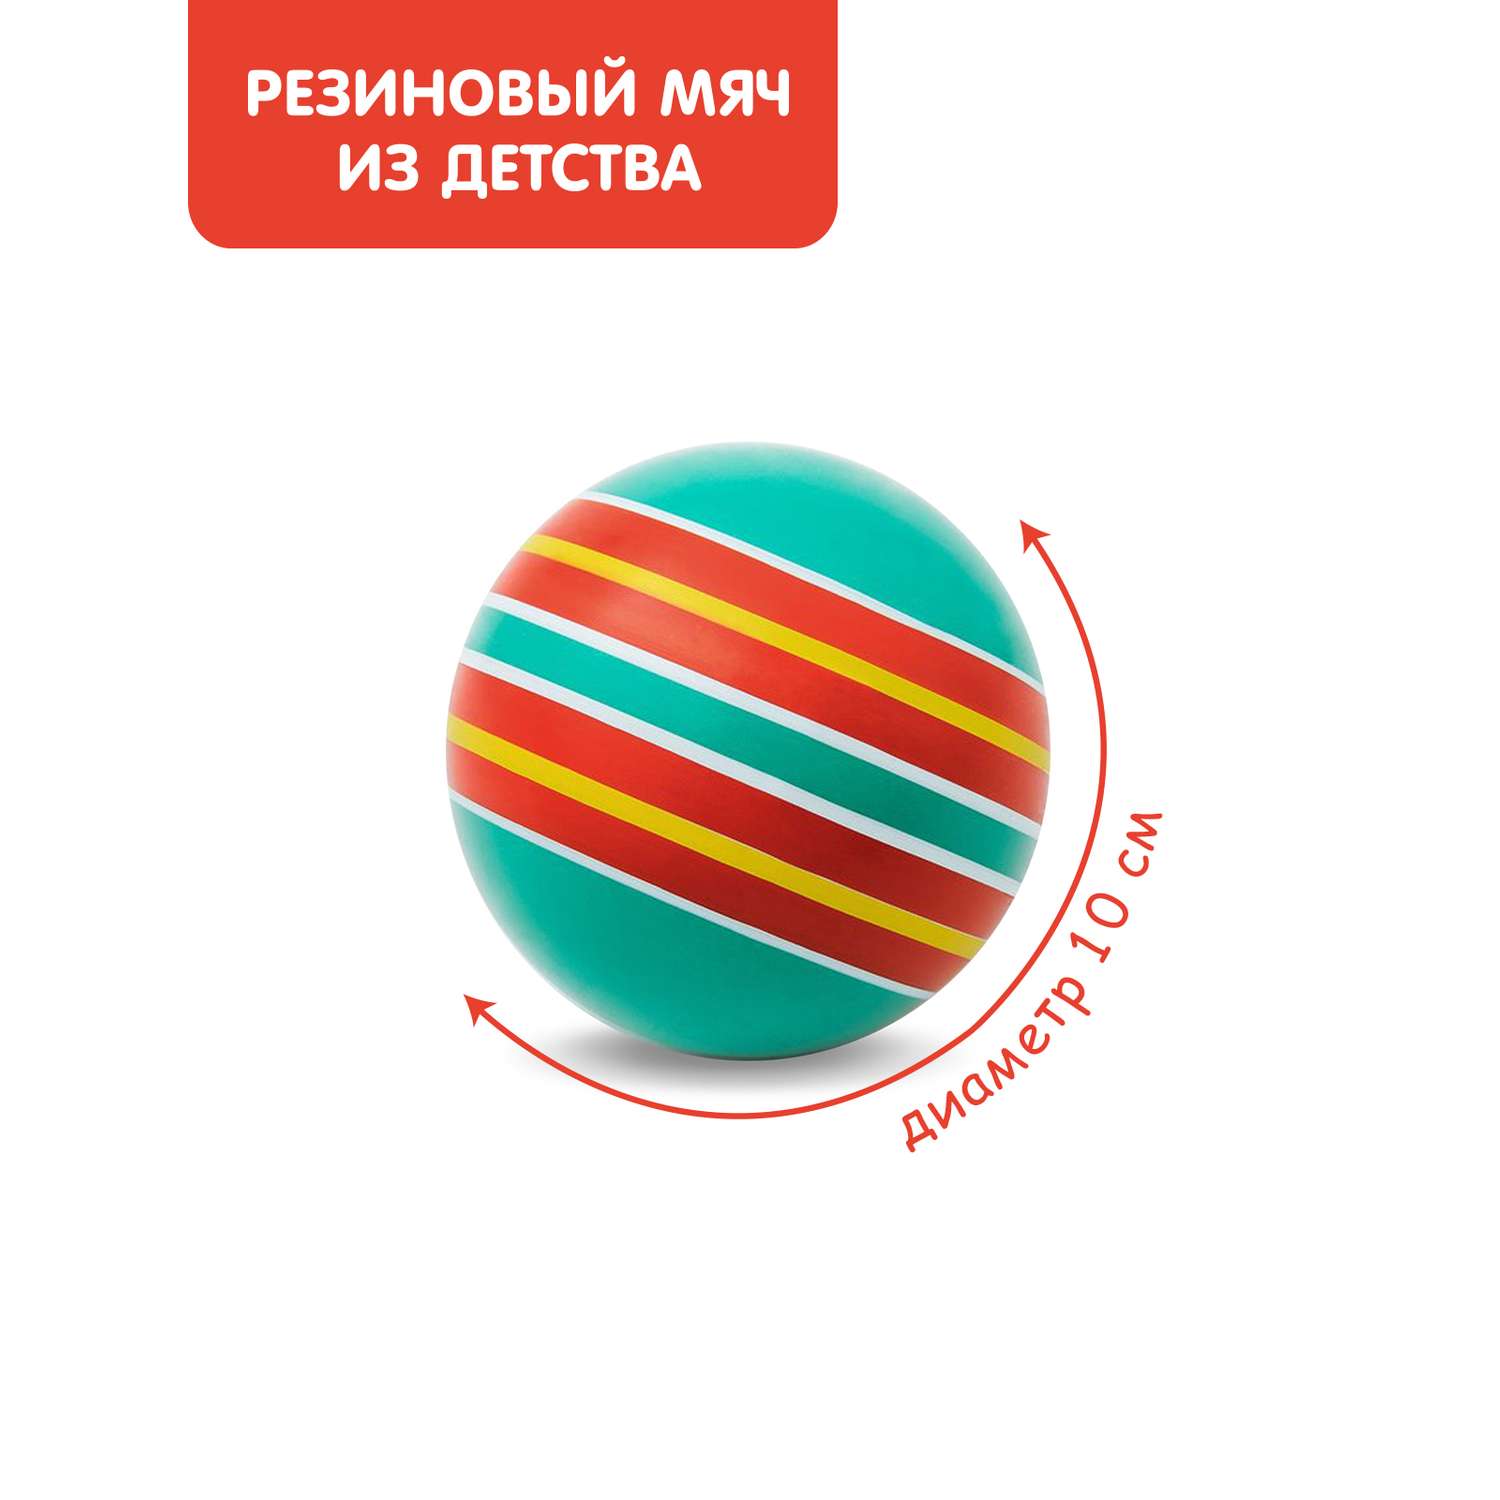 Мяч ЧАПАЕВ диаметр 100 мм Тропинки бирюзовый фон красные полоски - фото 1